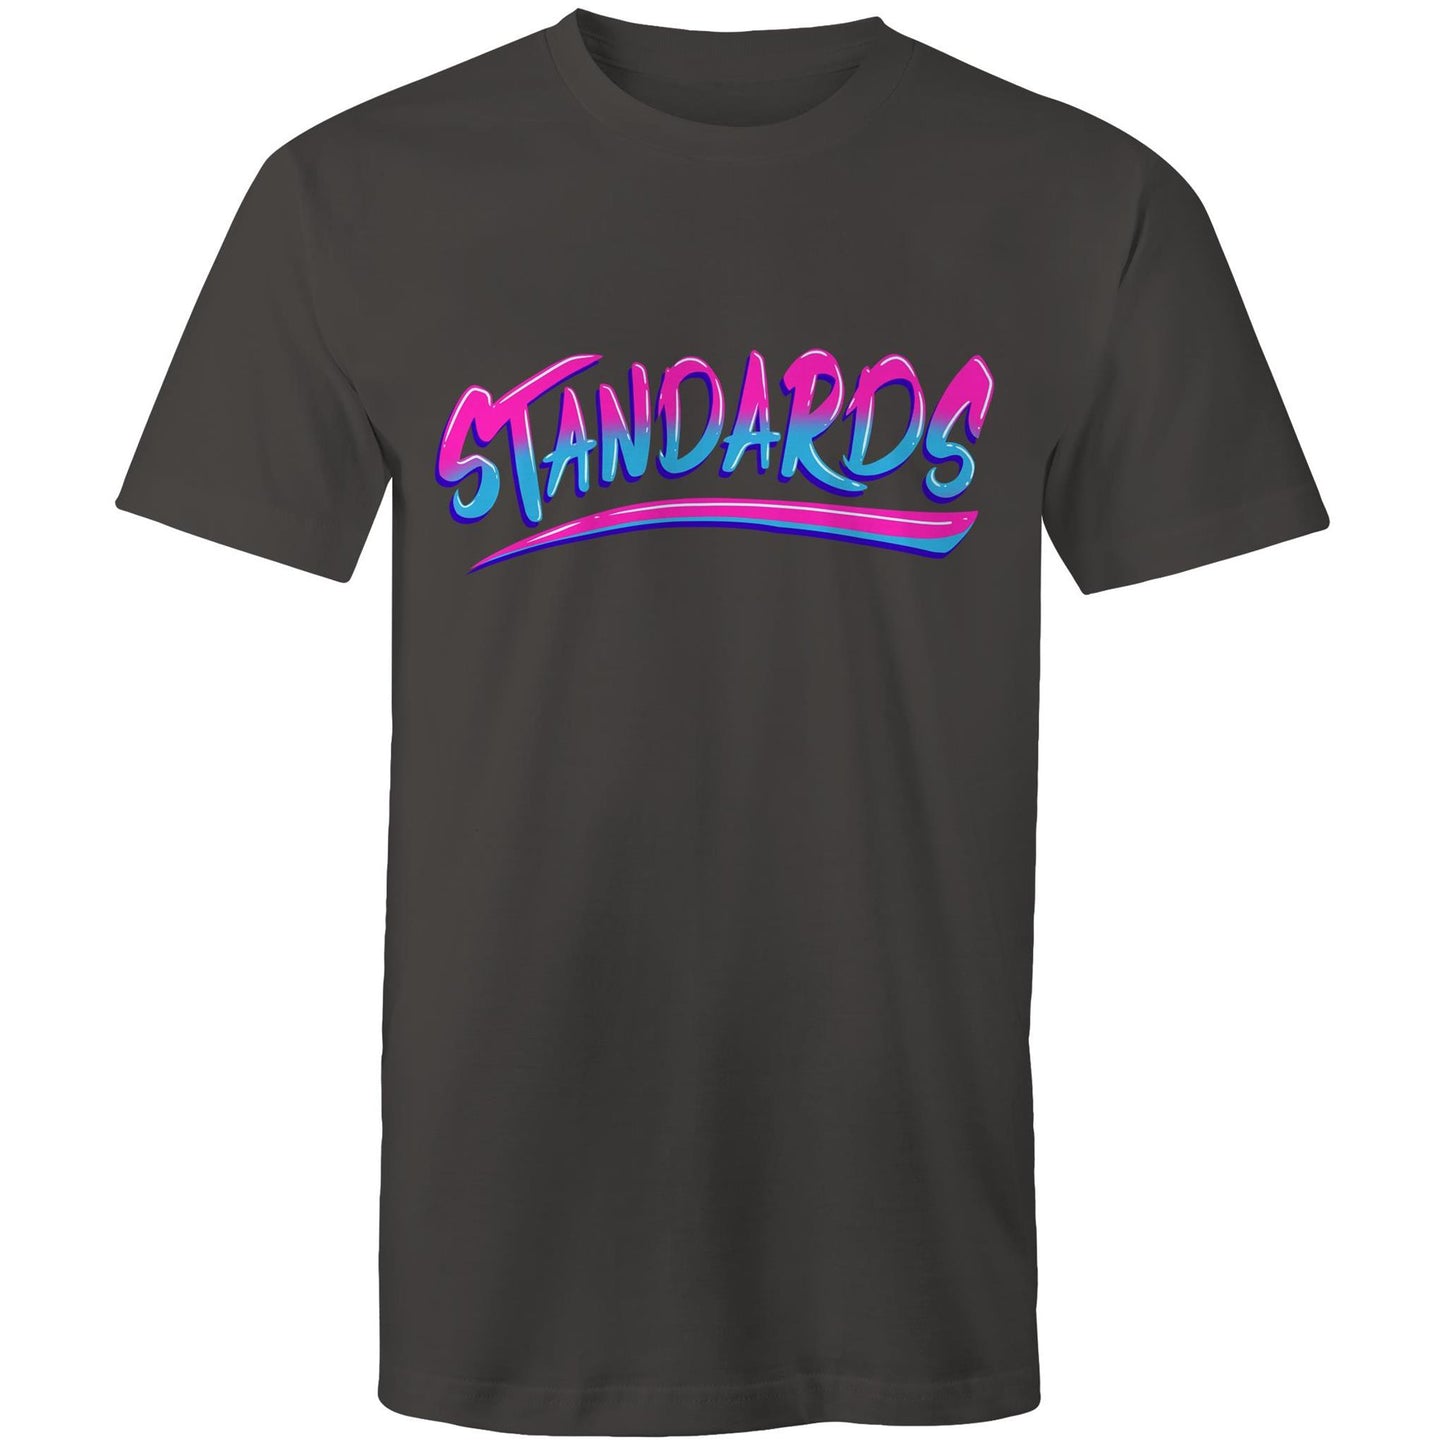 Standards T-Shirt